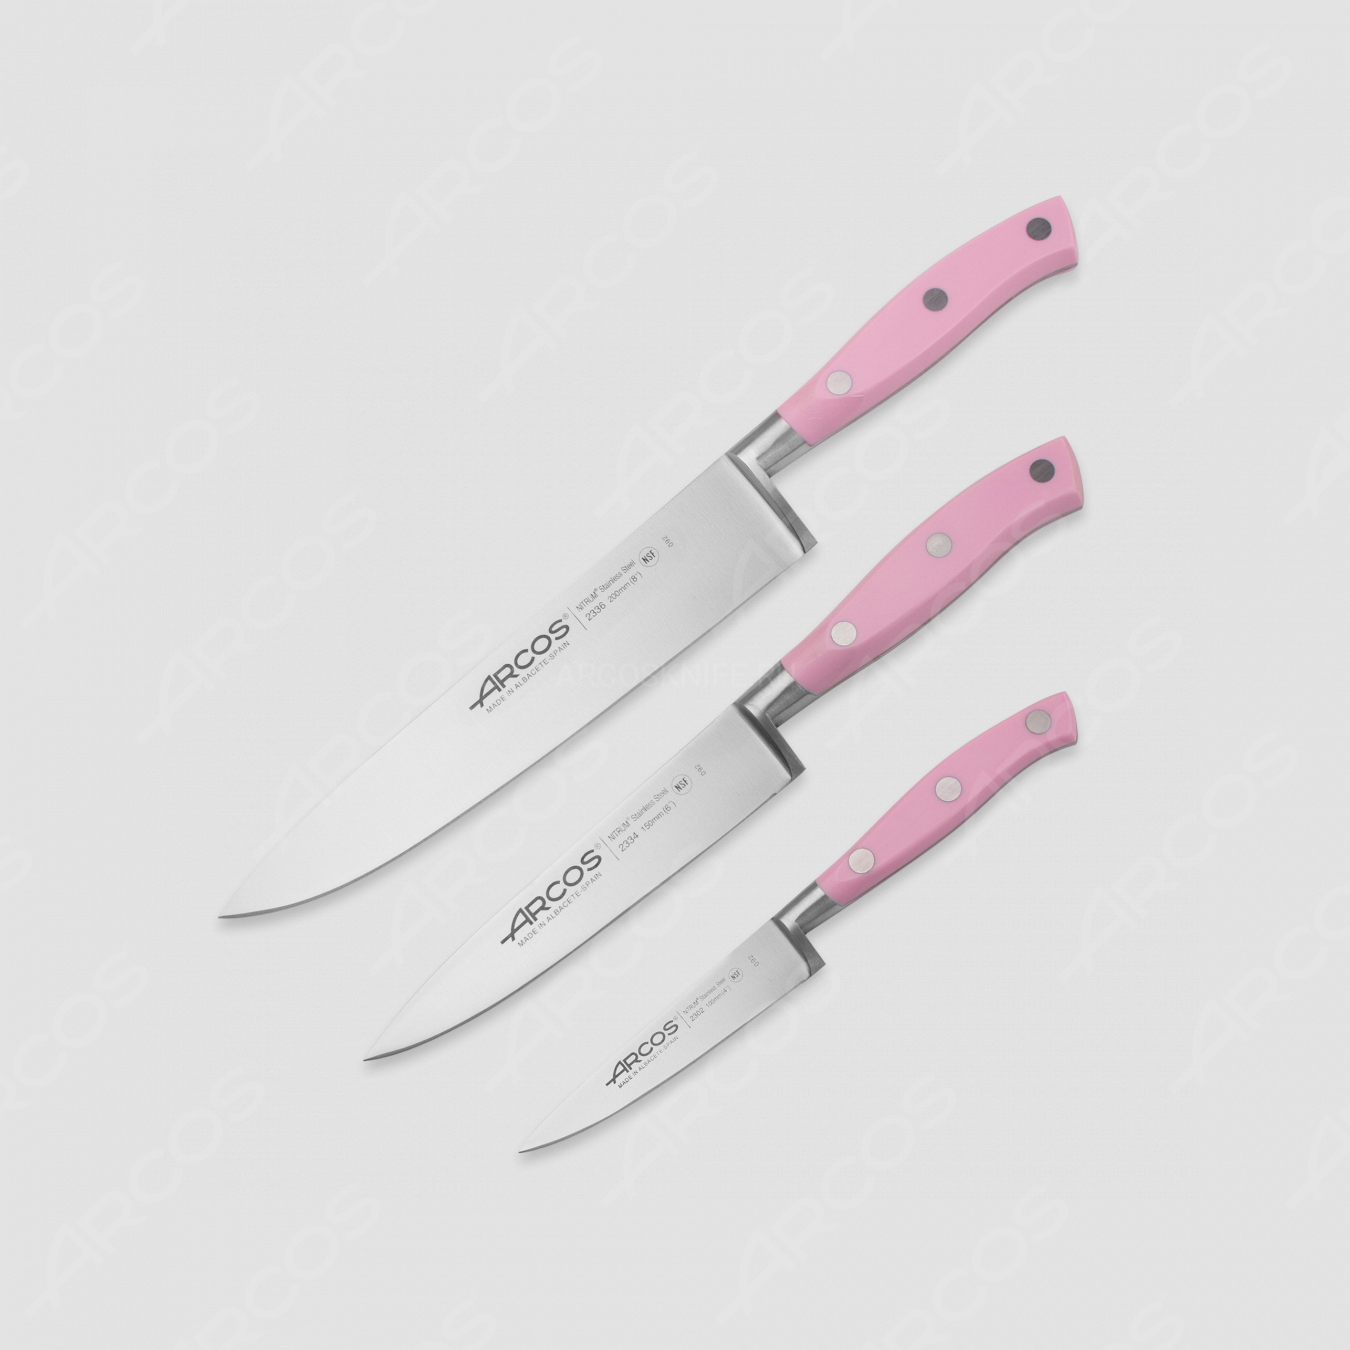 Набор кухонных ножей 3 шт. (10 см, 15 см, 20 см), серия Riviera Rose, ARCOS, Испания